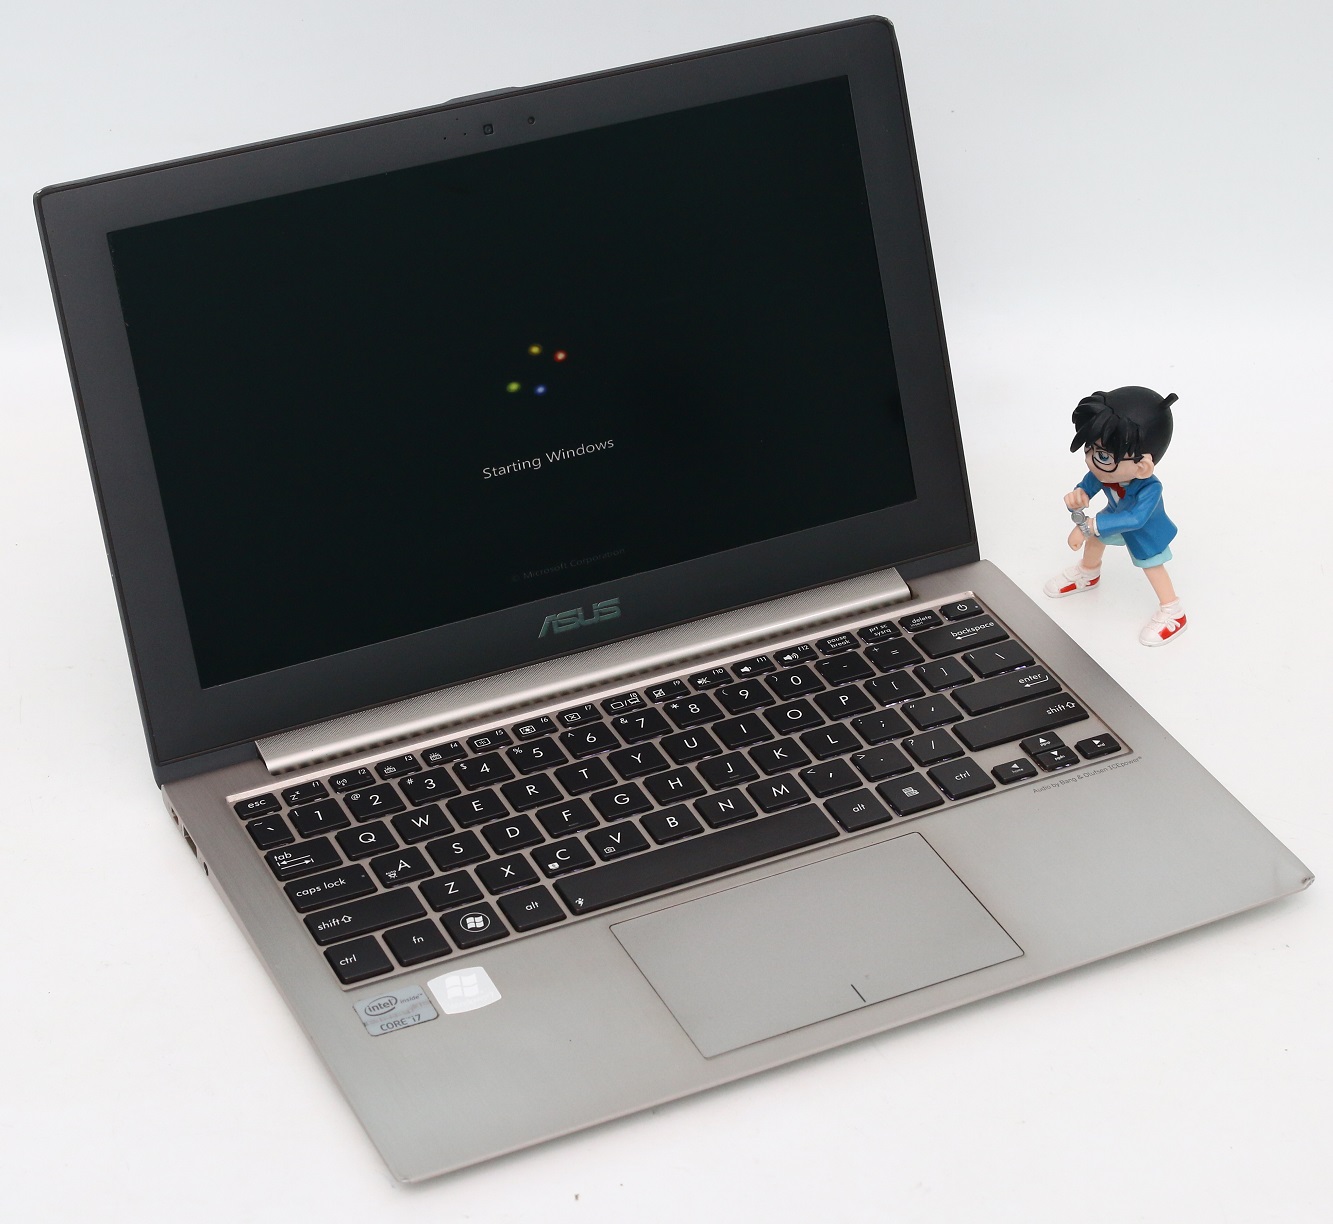 Asus Zenbook UX21A Bekas  Jual Beli Laptop Second dan 